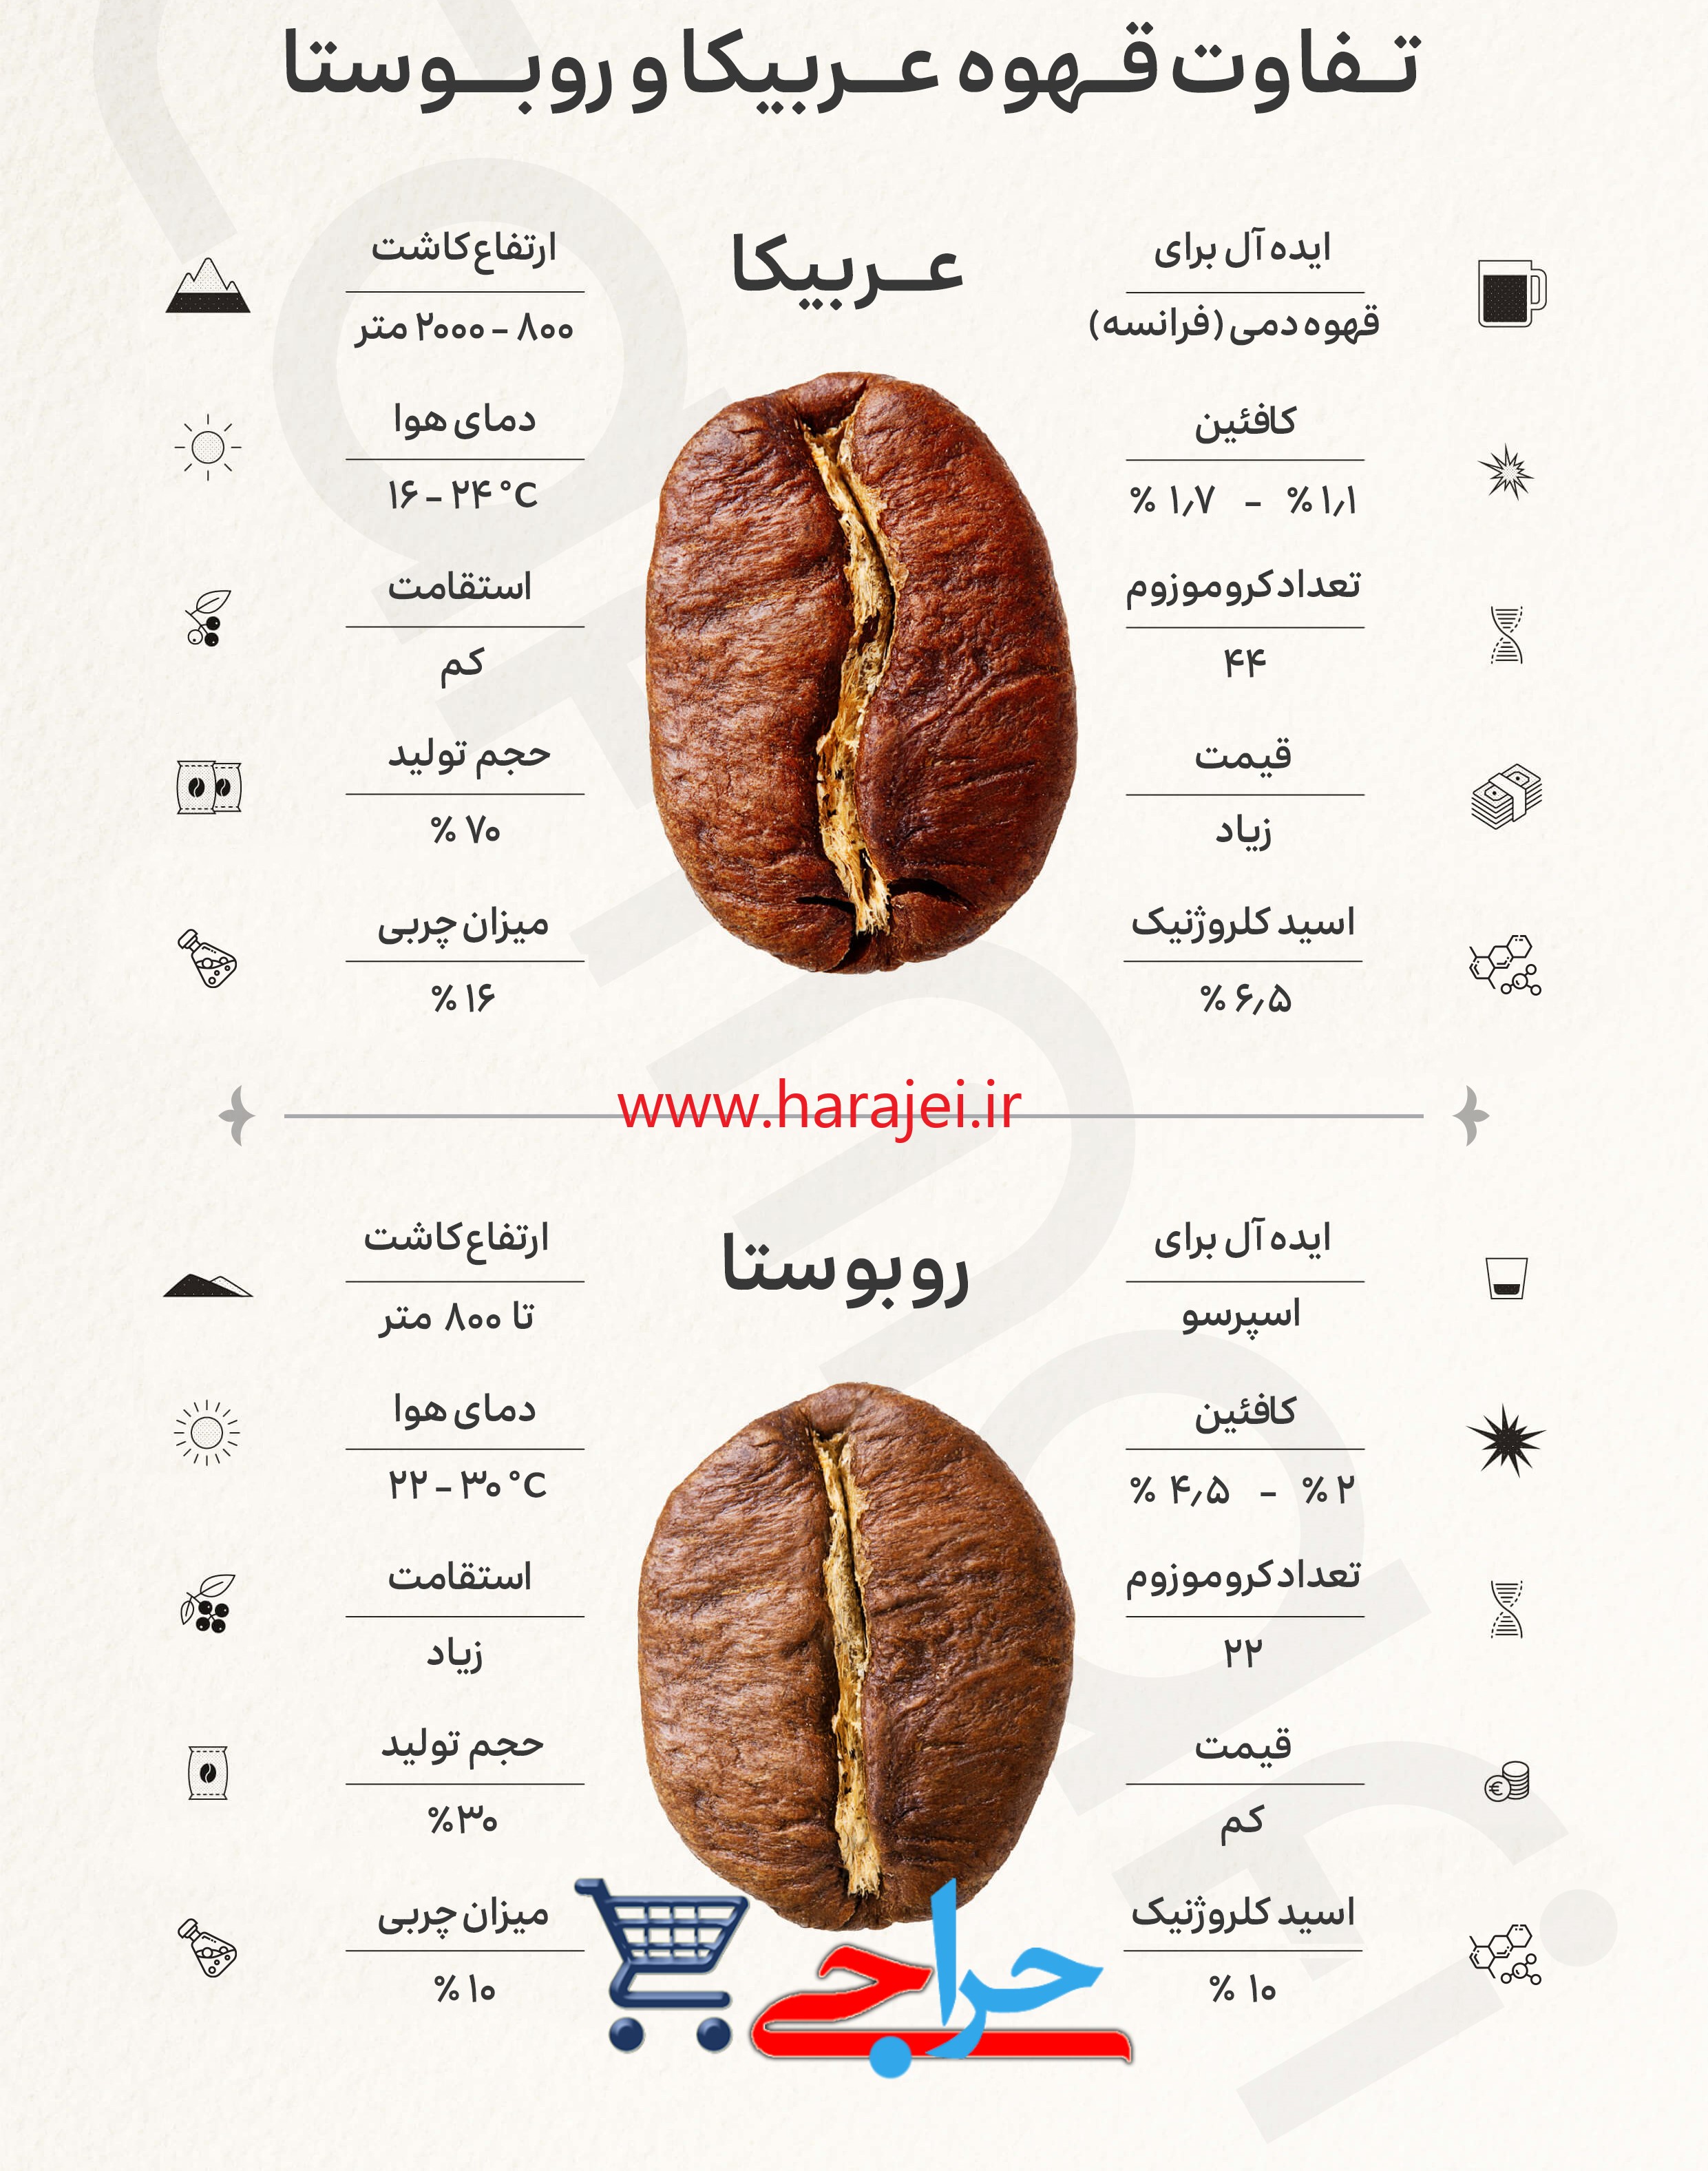 مقایسه ویژگیهای قهوه عربیکا با روبوستا